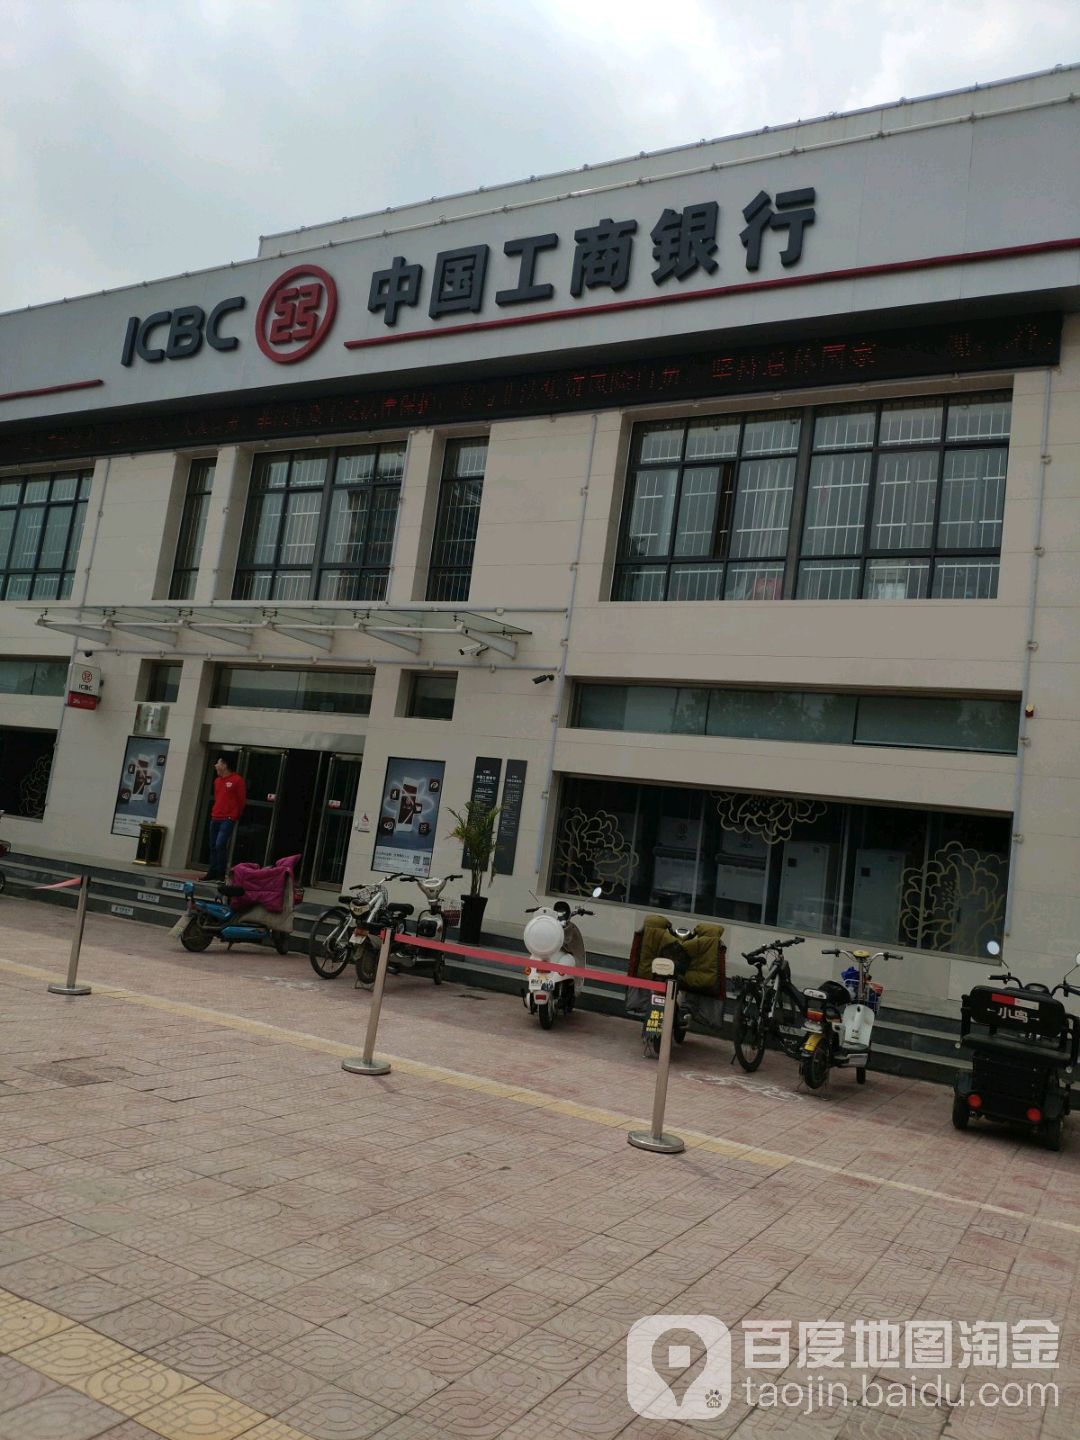 中国工商银行24小时自助银行(周口铁路支行)